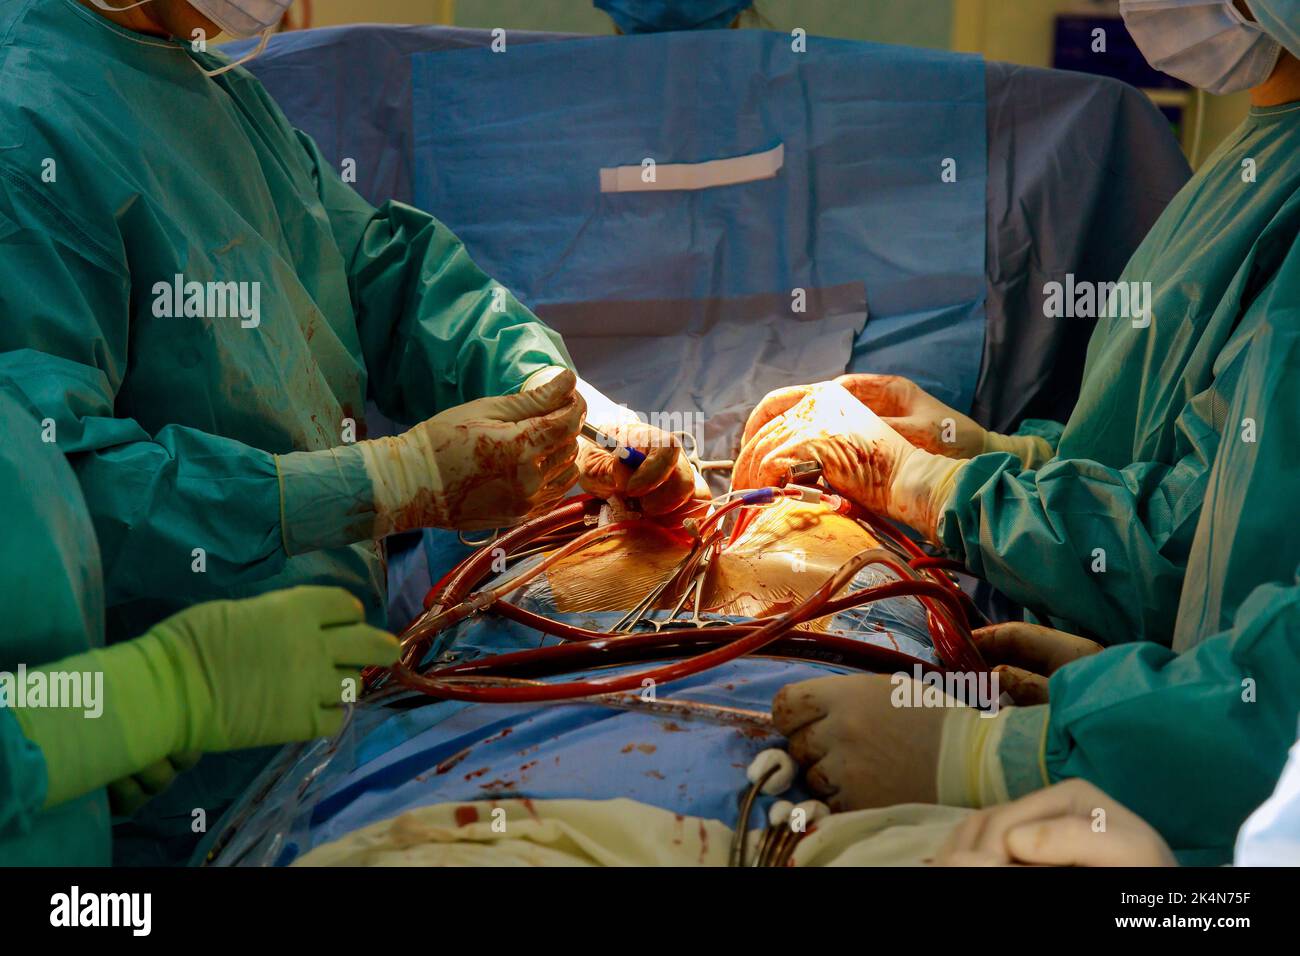 Un innesto di bypass coronarico CABG viene eseguito nella sala operatoria dell'ospedale per il trattamento di malattie cardiache a causa di malattie cardiache coronariche. Foto Stock